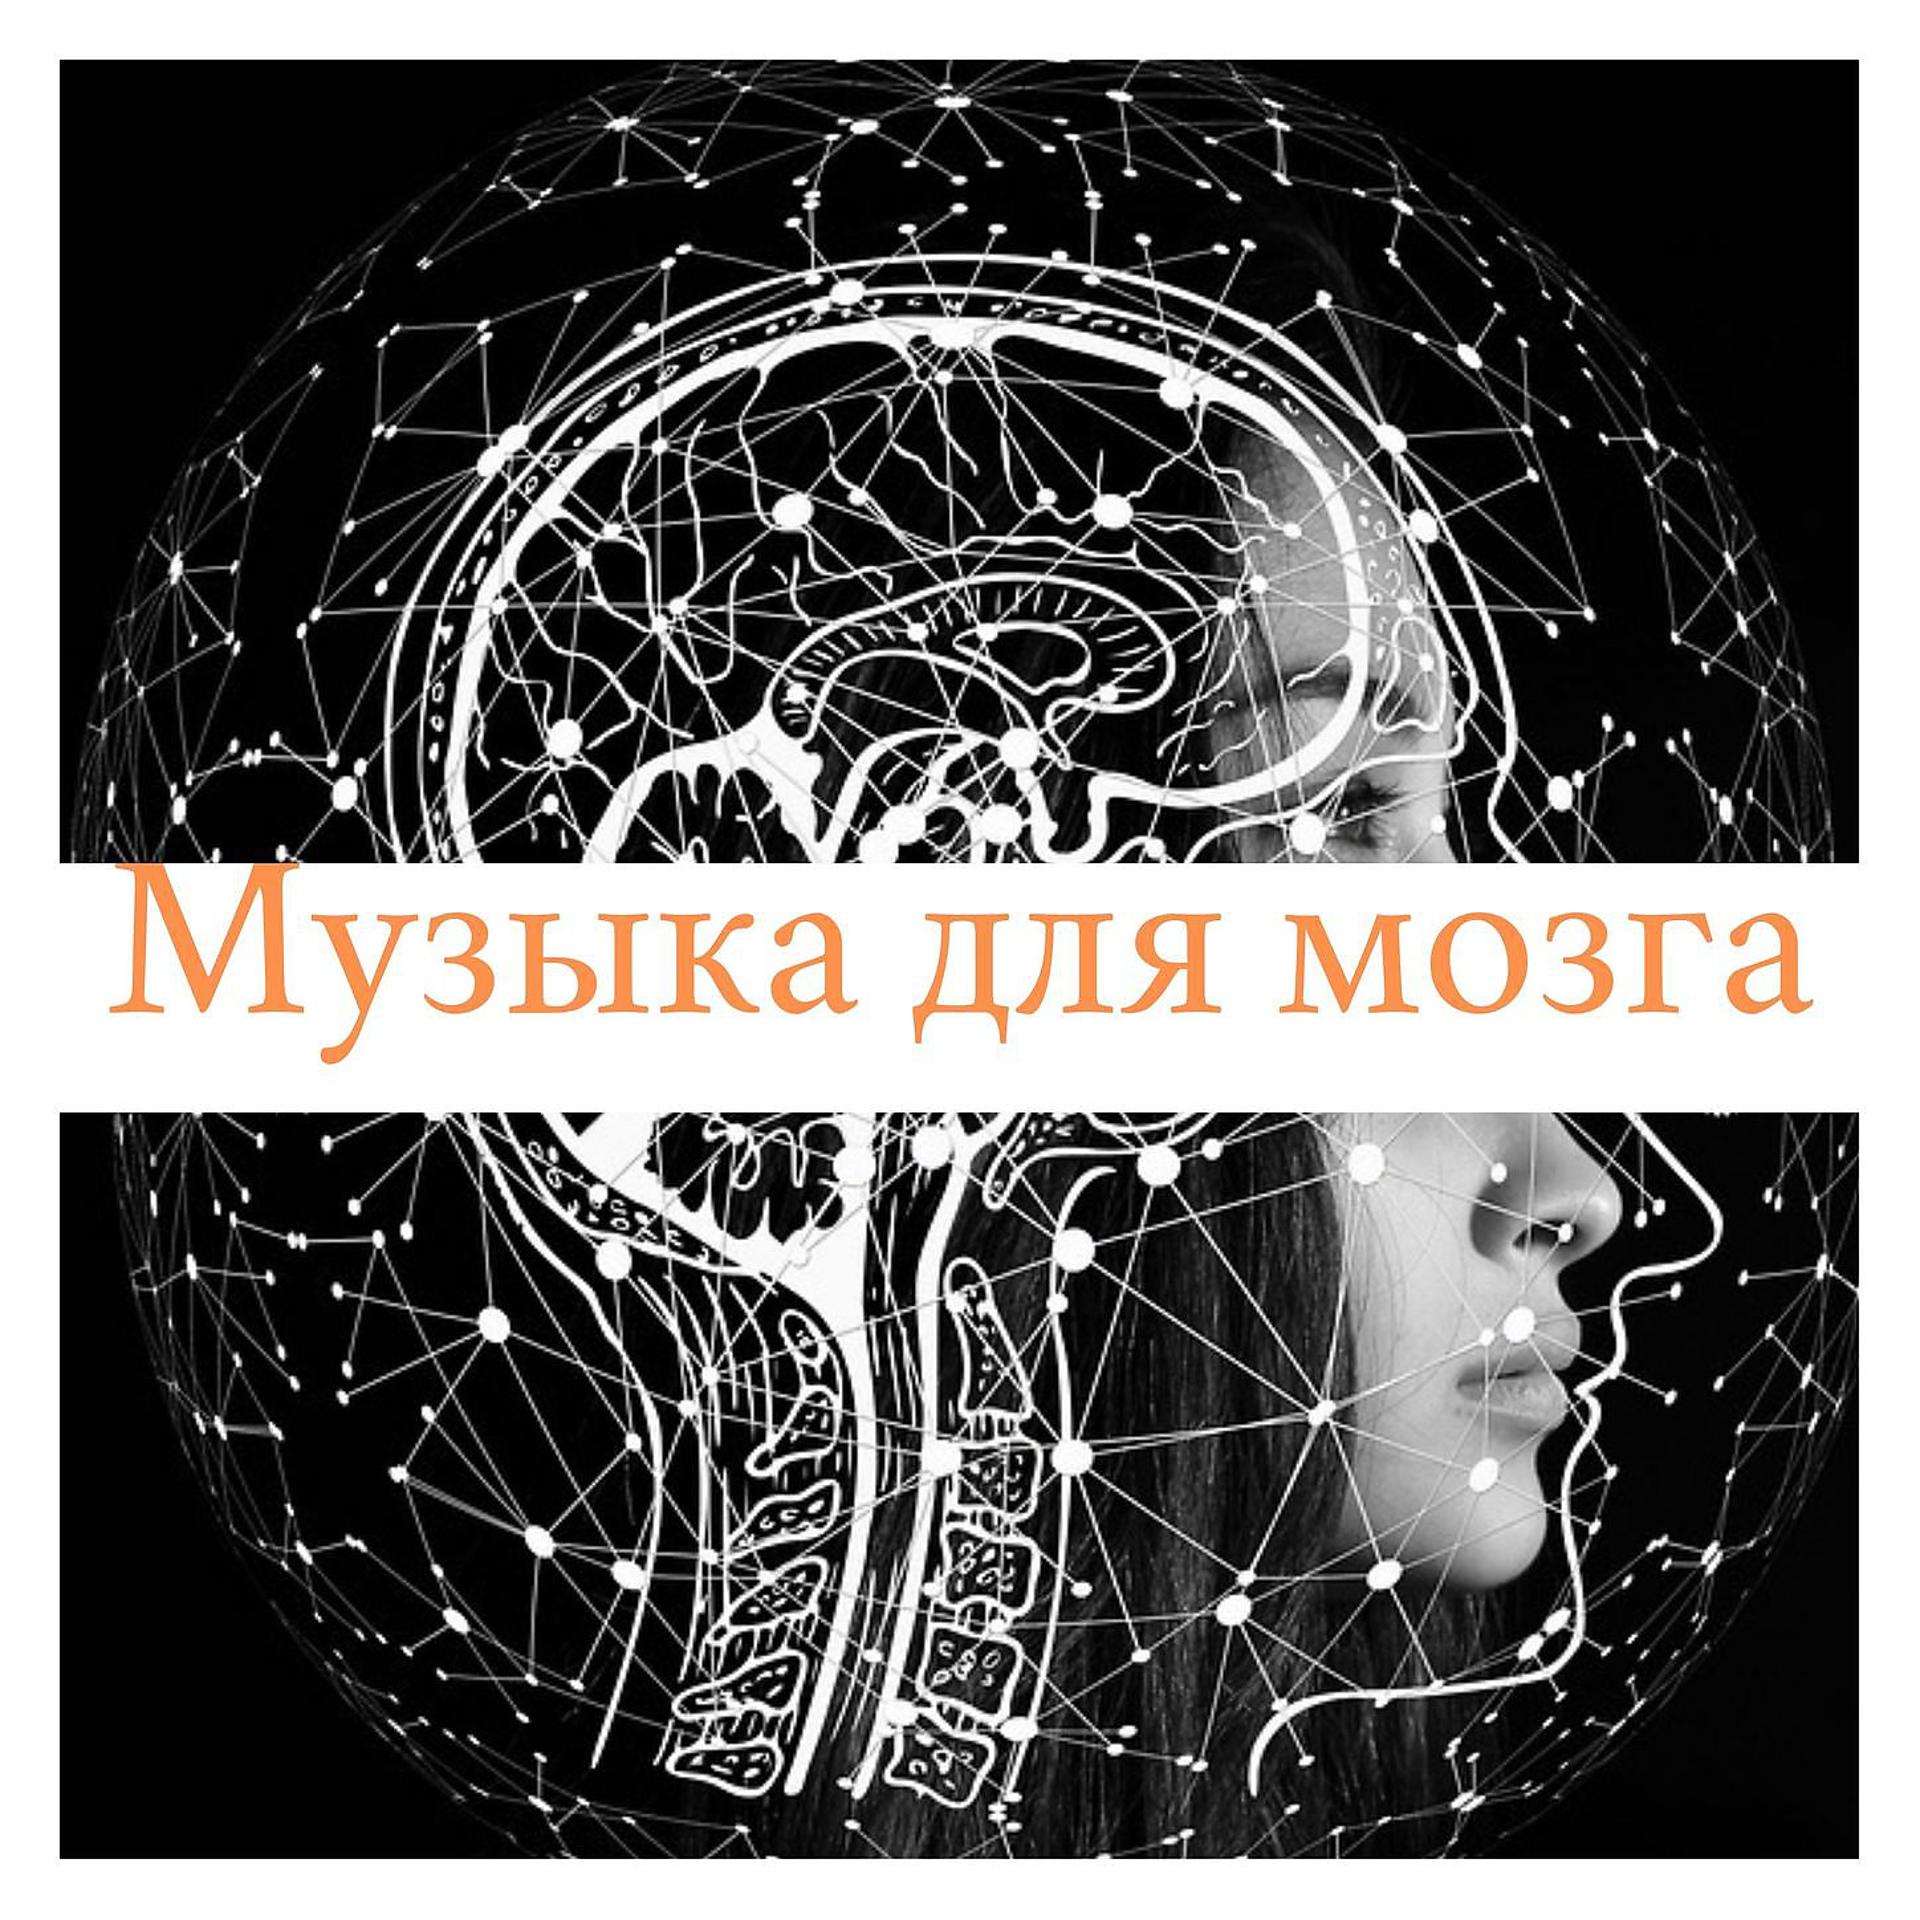 Музыка для мозга лечебная слушать. Музыка и мозг. Минусы музыки для мозга. Youtube Music музыка Meladze.